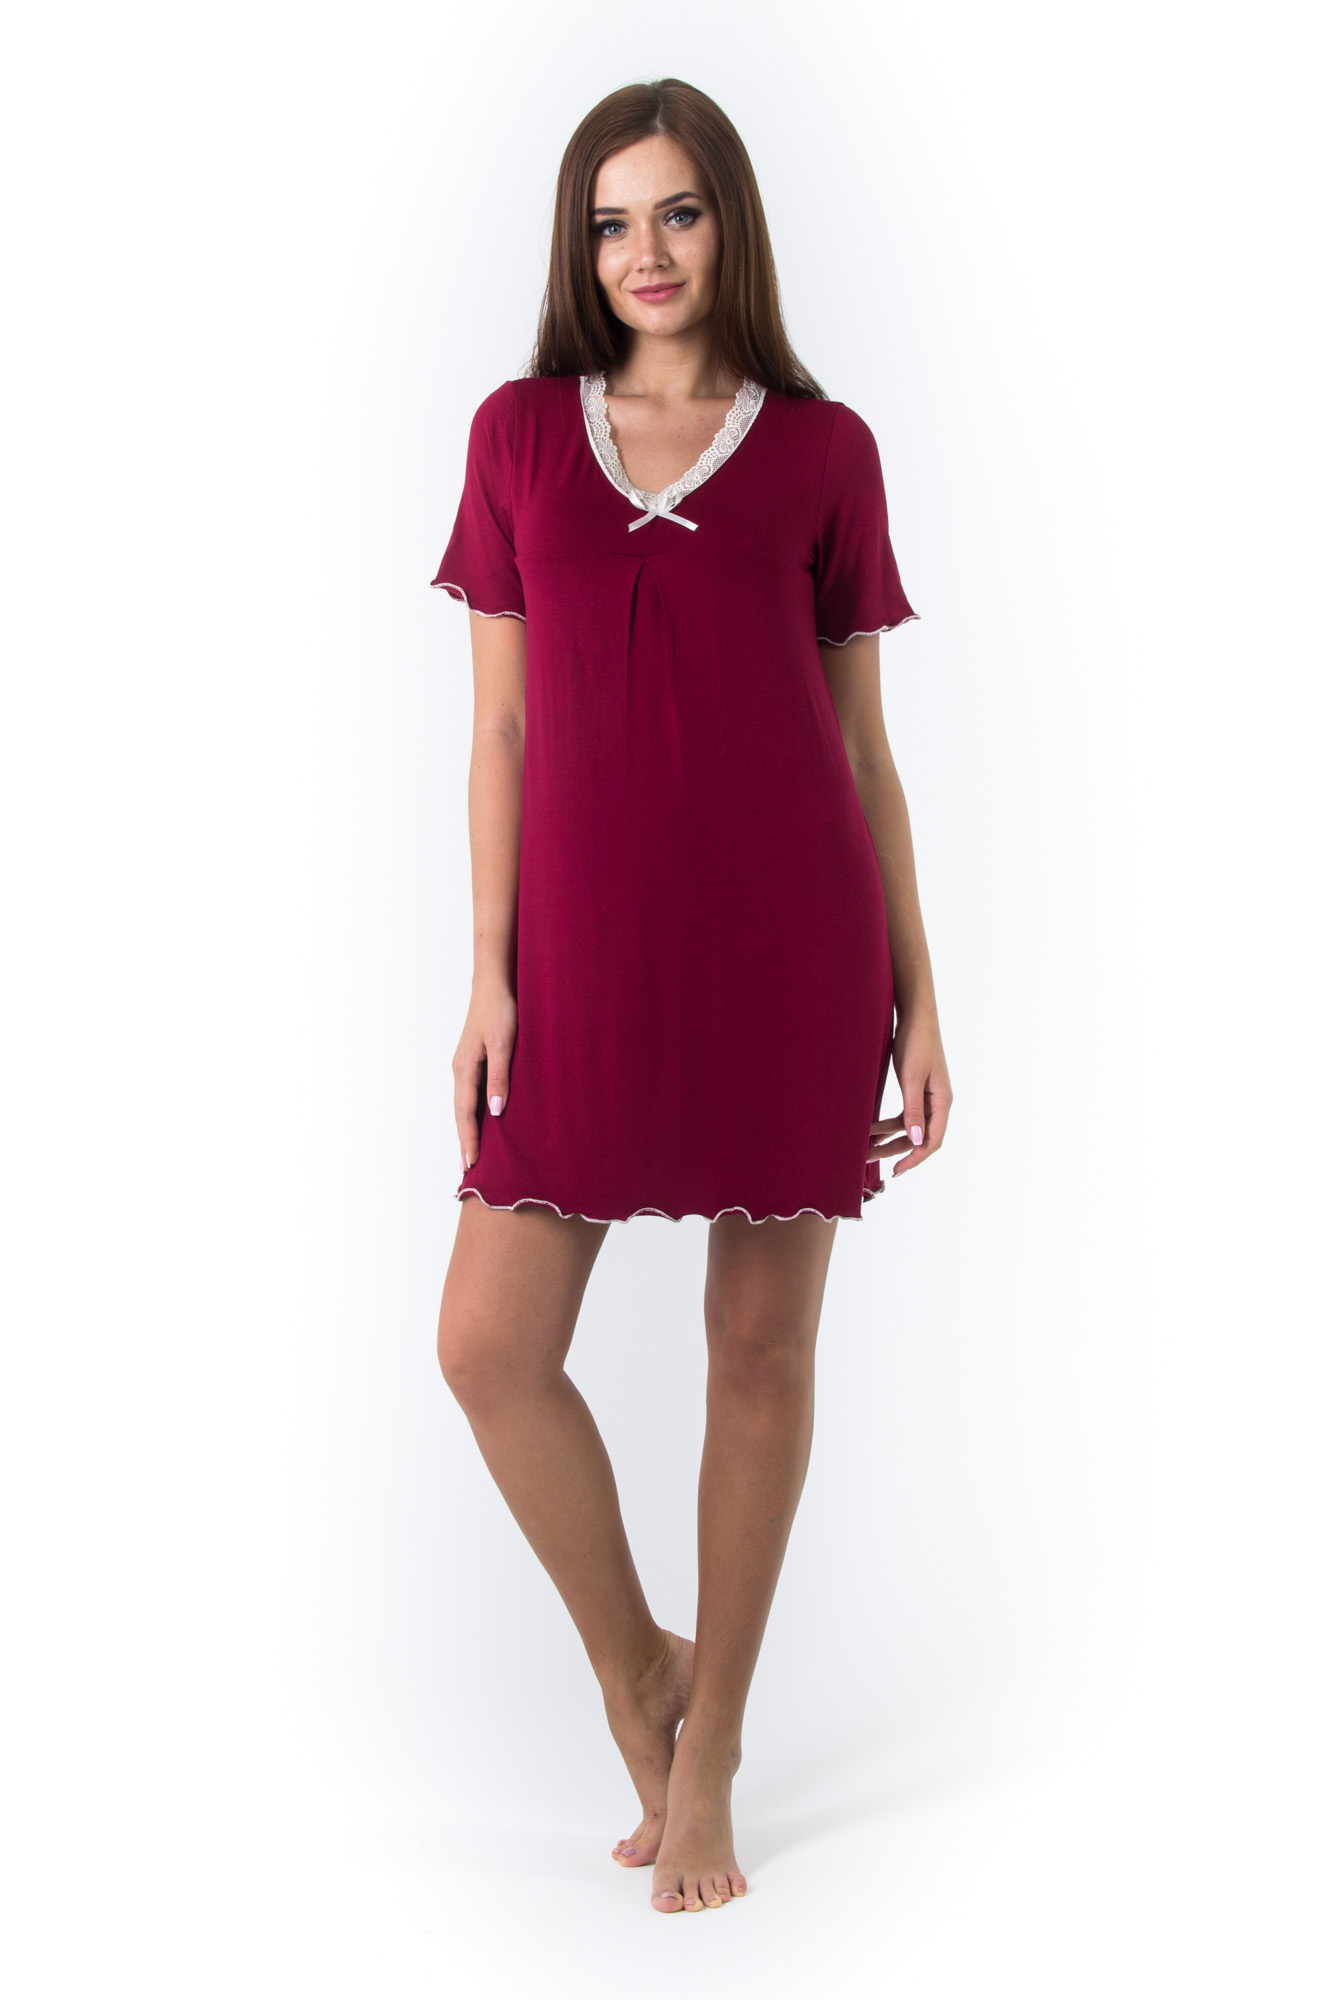 Ночная сорочка Tricia Цвет: Рубиновый (58), размер {}{}